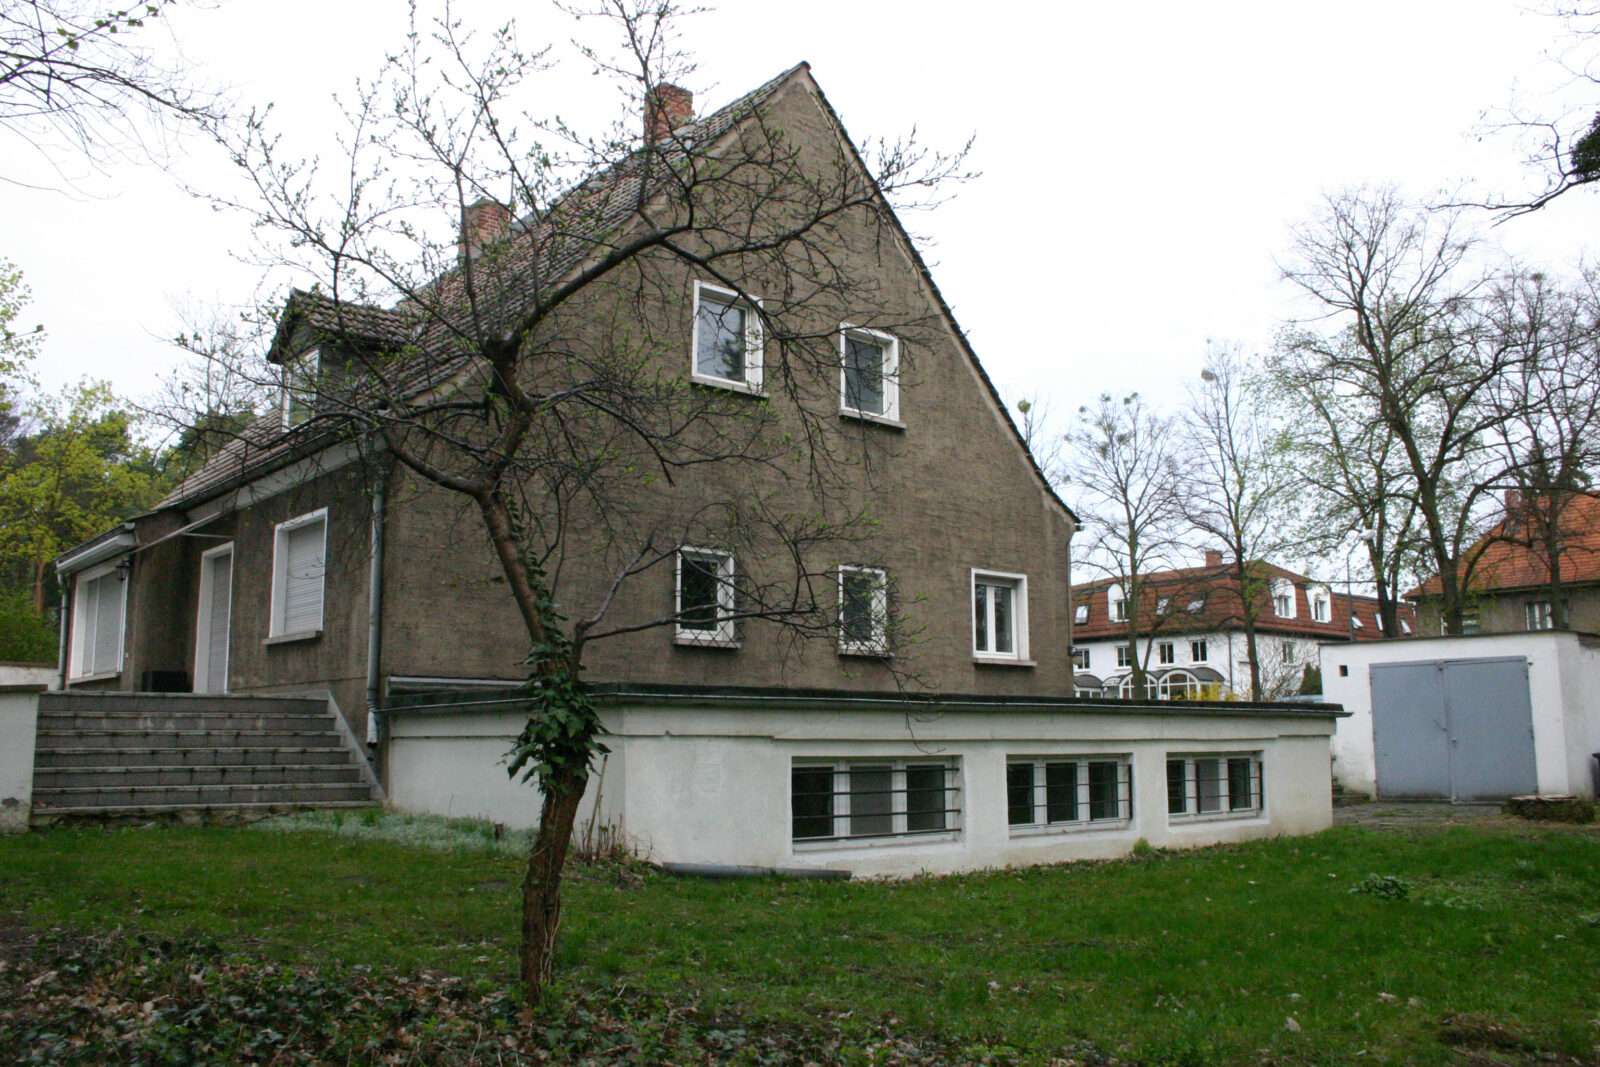 Grau verputztes Einfamilienhaus mit Satteldach. Nur das historische Sockelgeschoss ist weiß gestrichen.